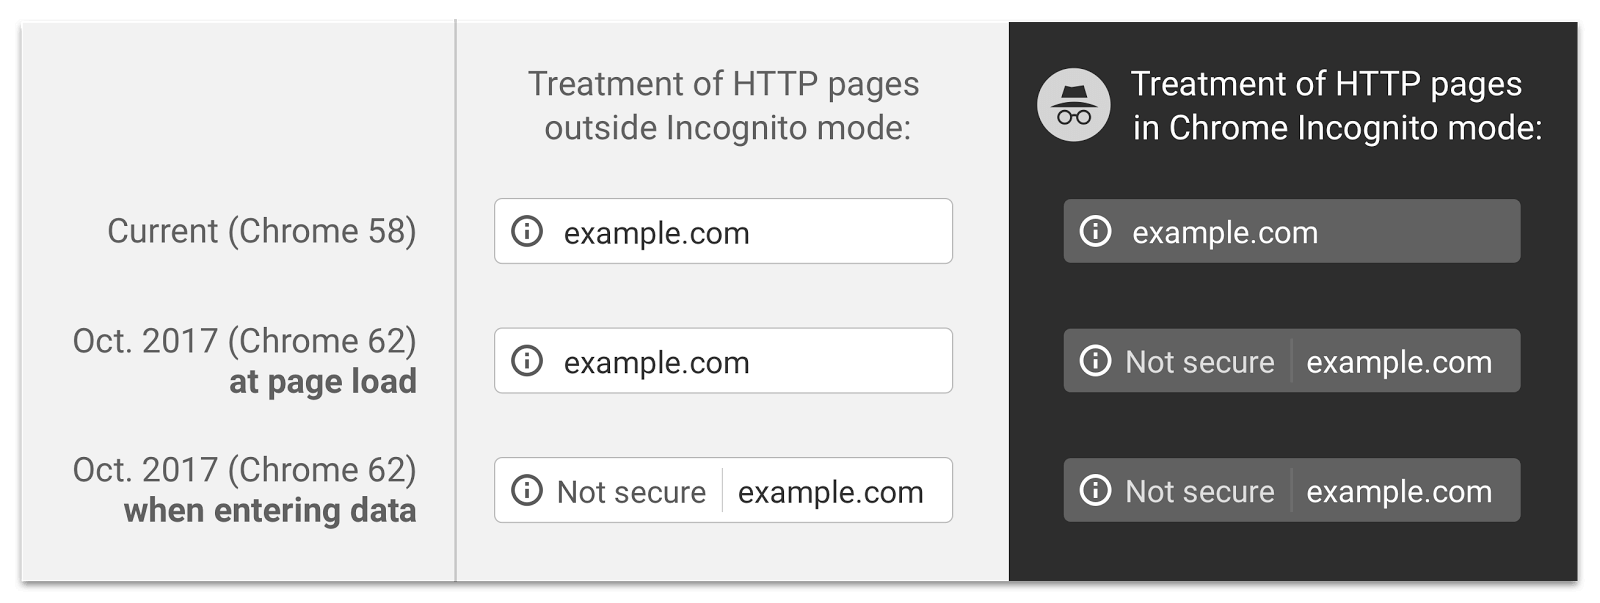 Chrome 62 HTTPS